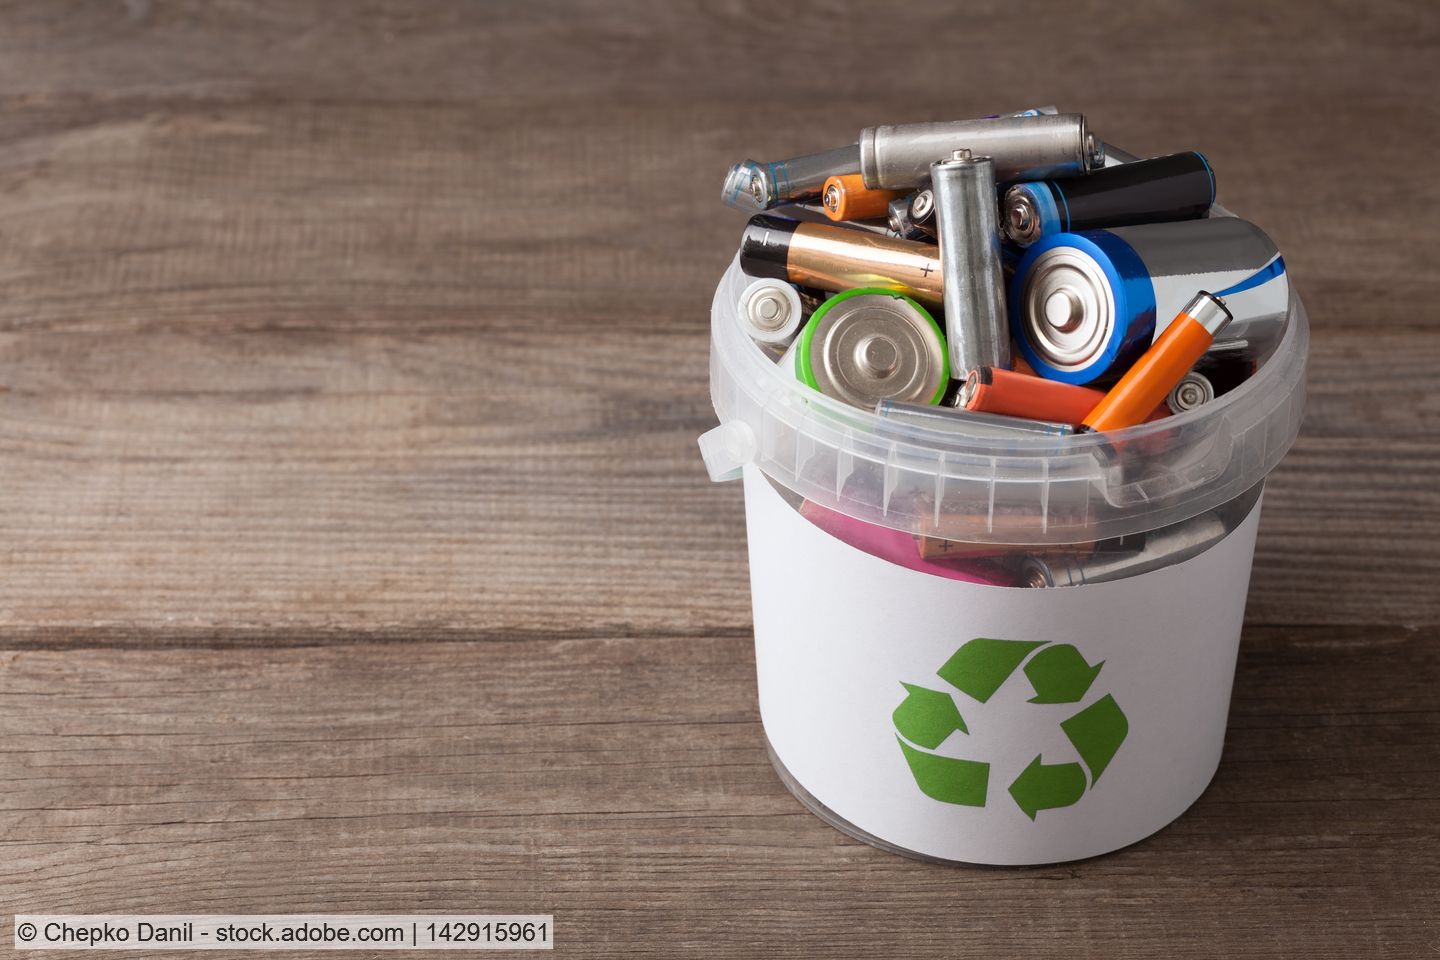 Batterieverordnung: EU-Parlament stimmt für höhere Sammelziele und strengere Recyclingvorgaben für Lithium